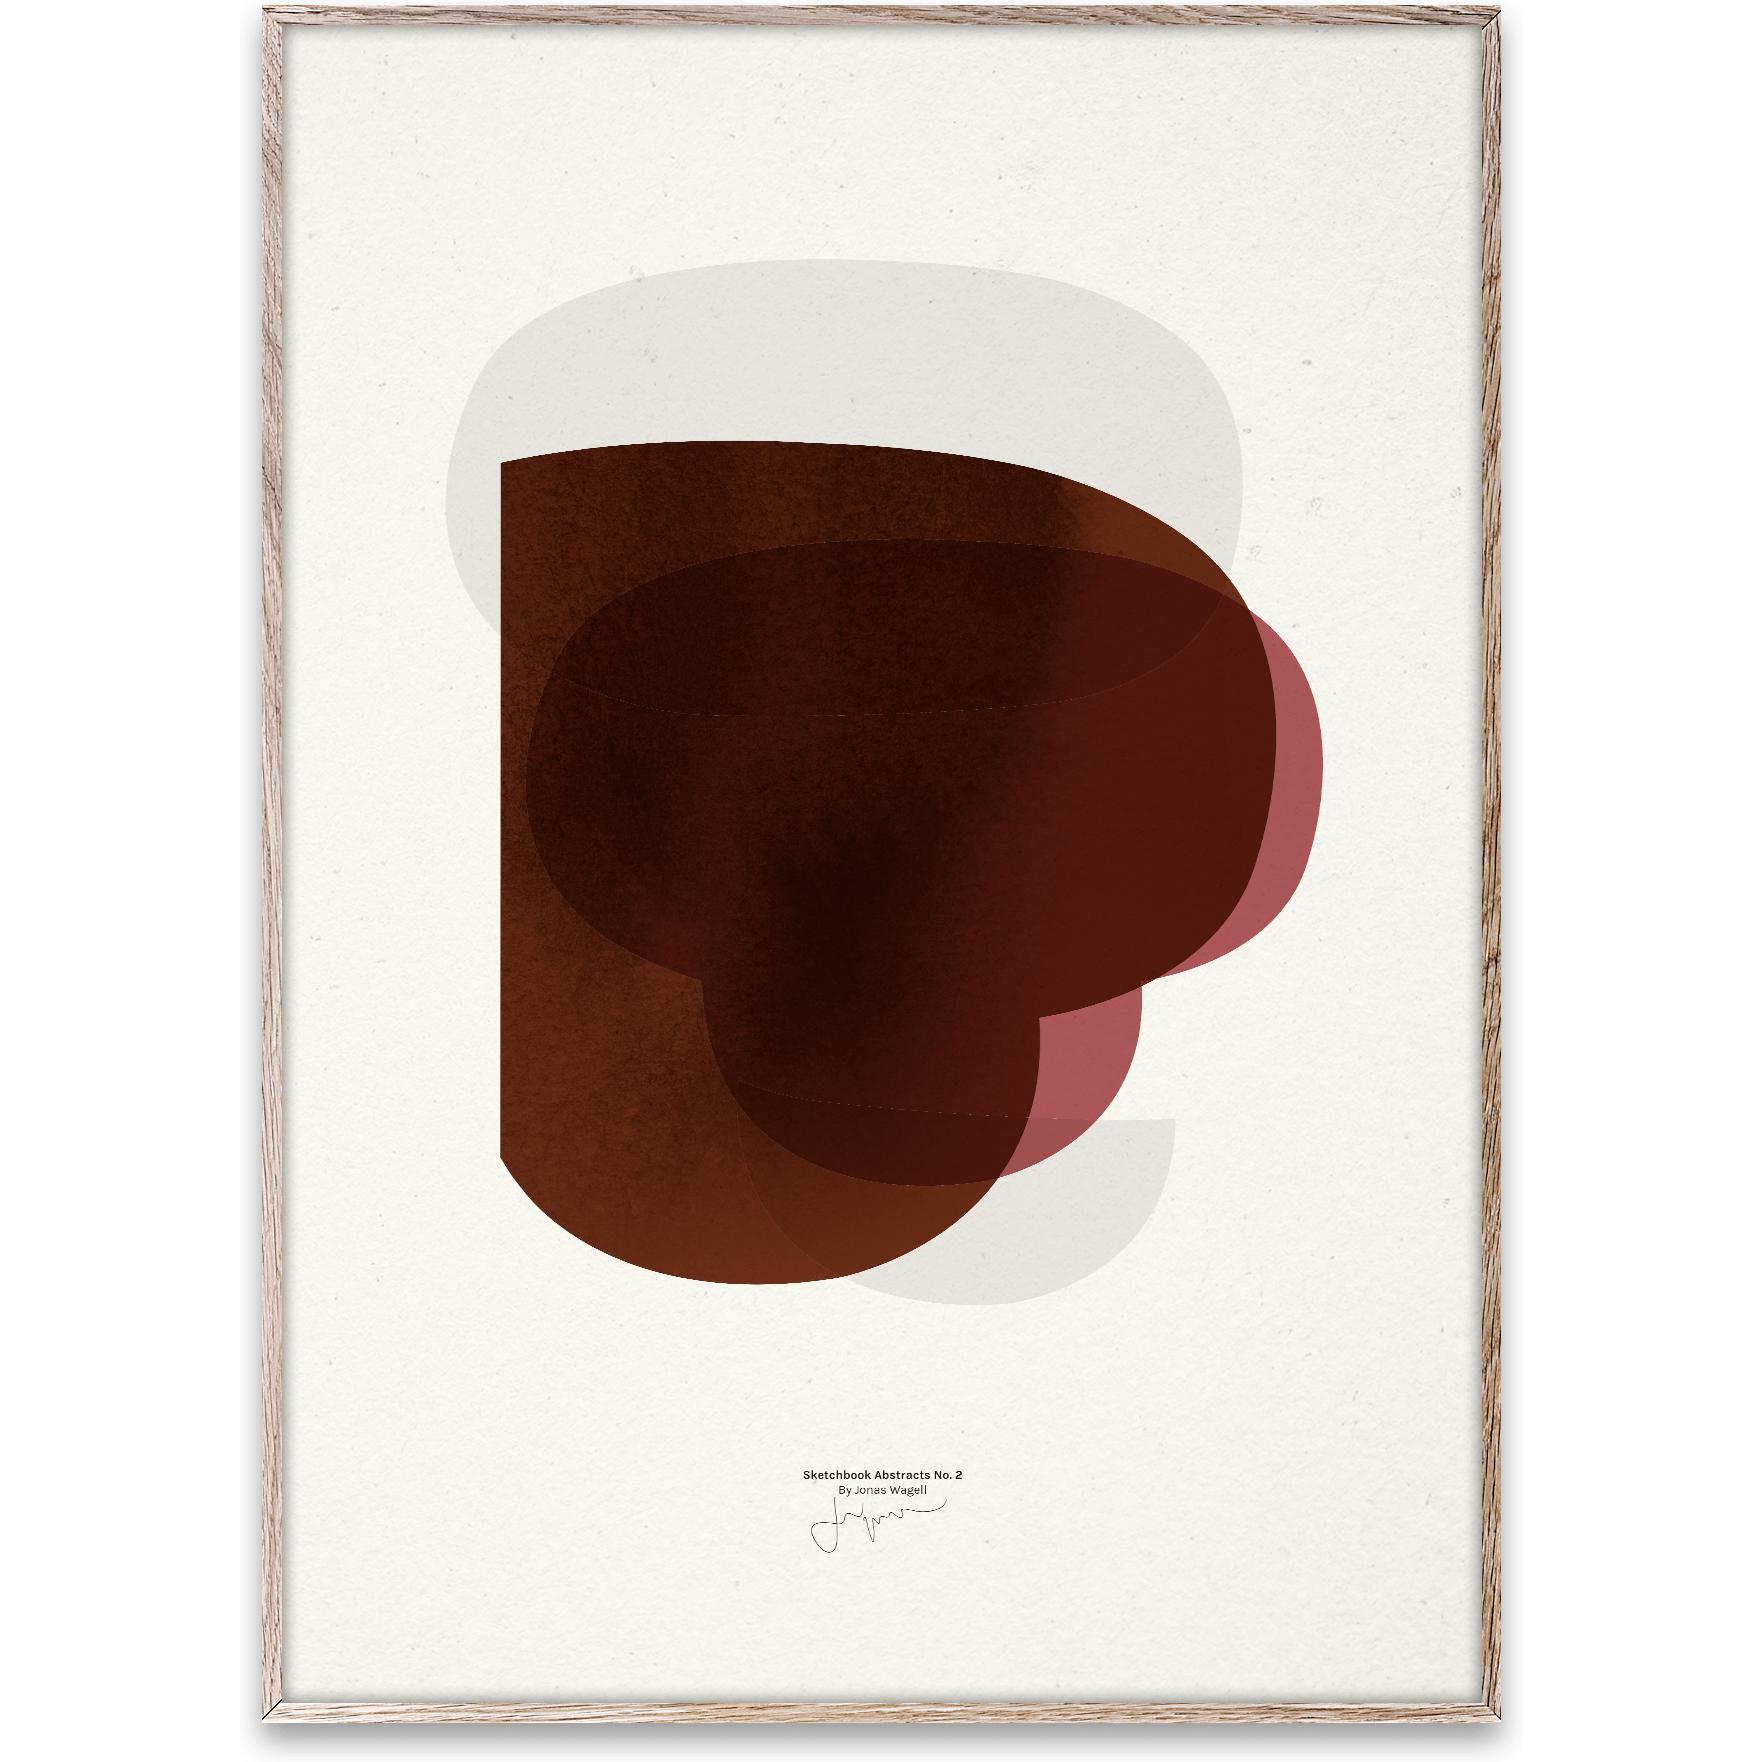 Paper Collective Skissbok abstrakt 02 affisch, 50x70 cm